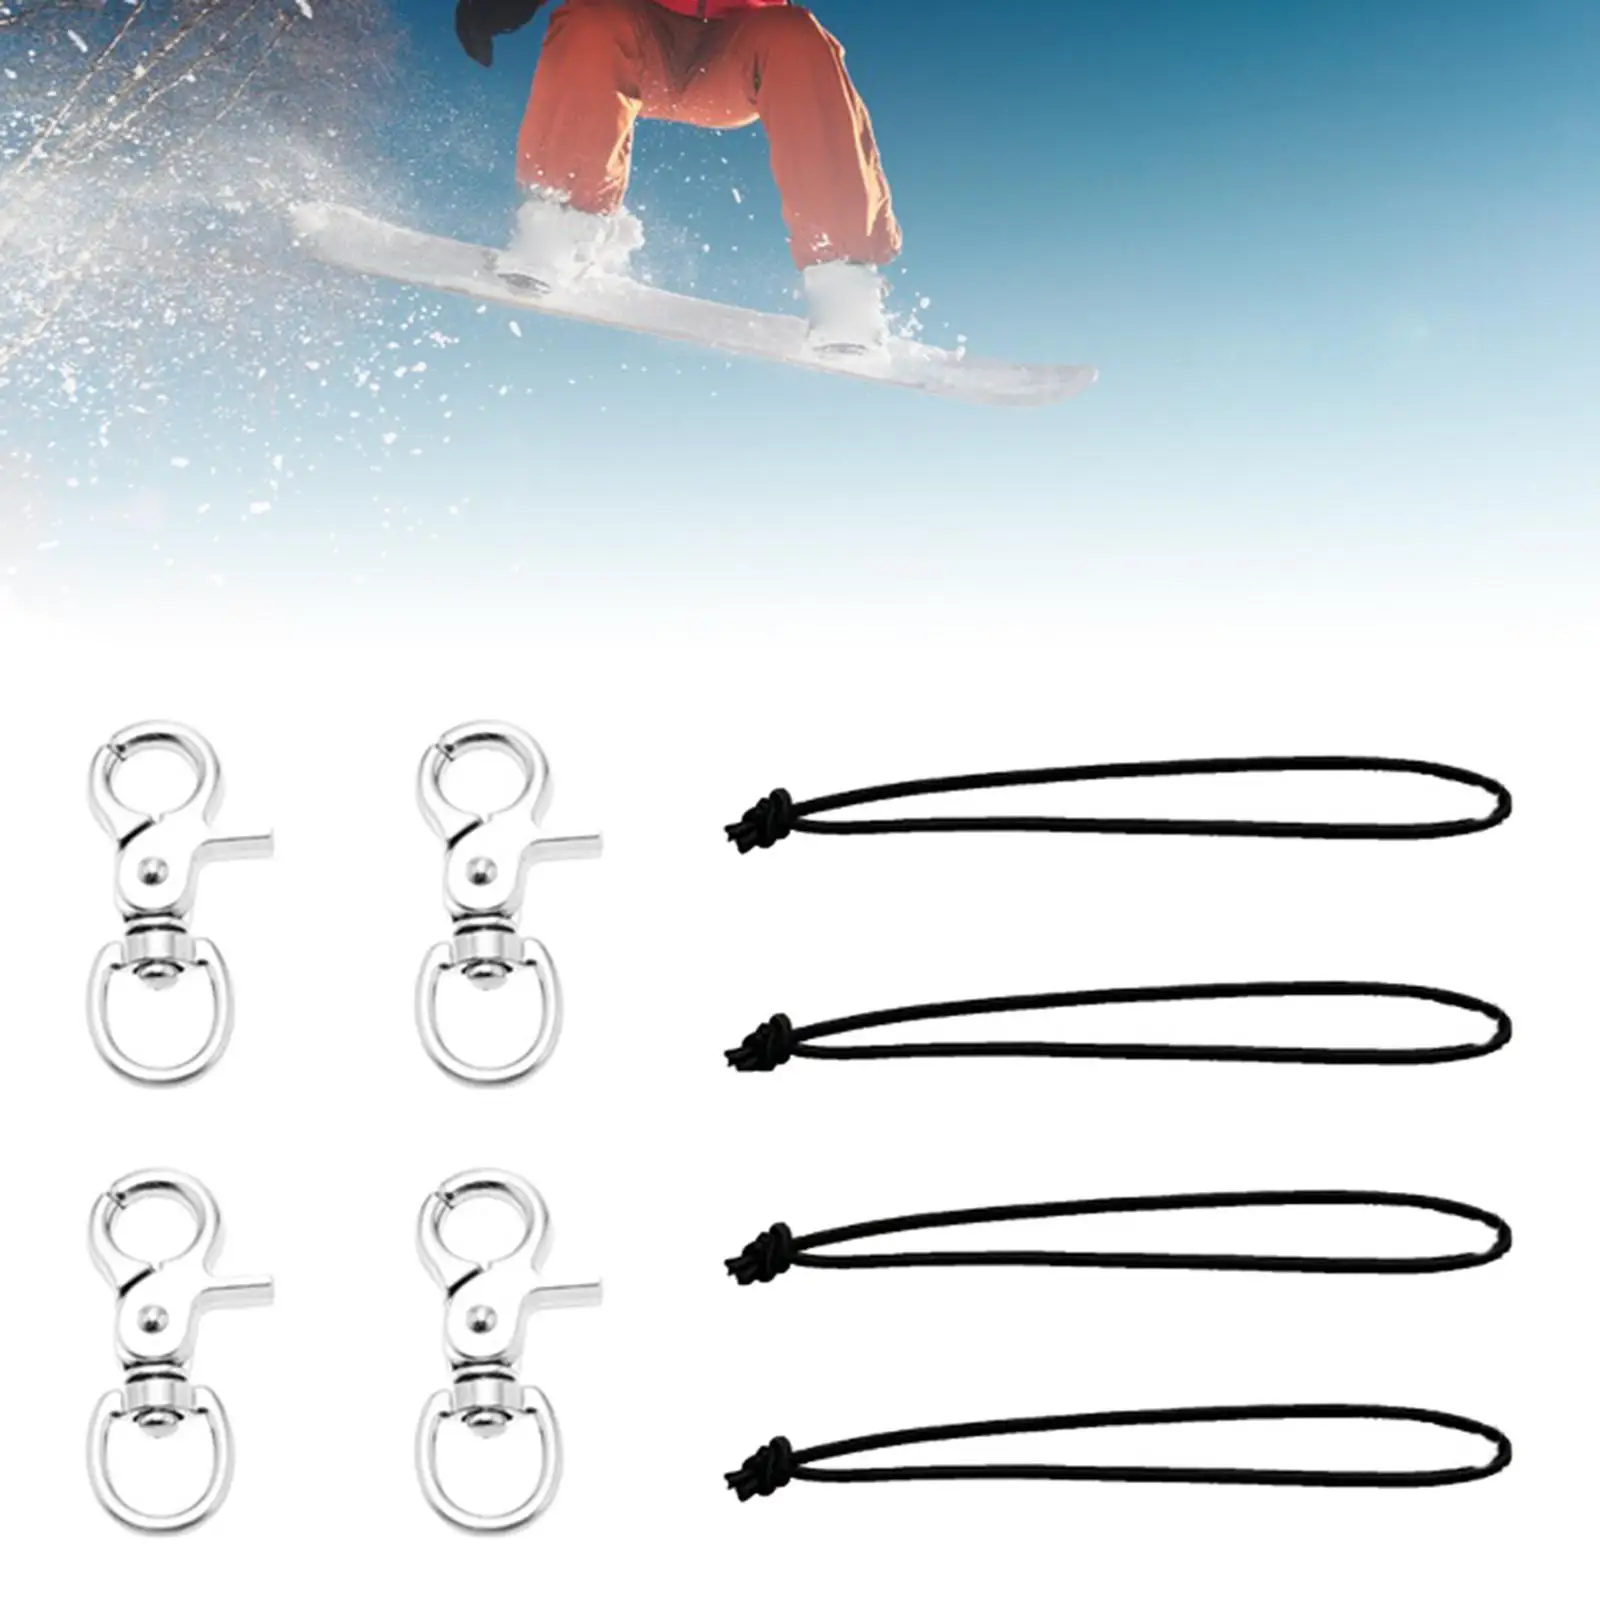 4x Skiing Snowboard Leash Cord Snowboard Bindings Useful for Professional